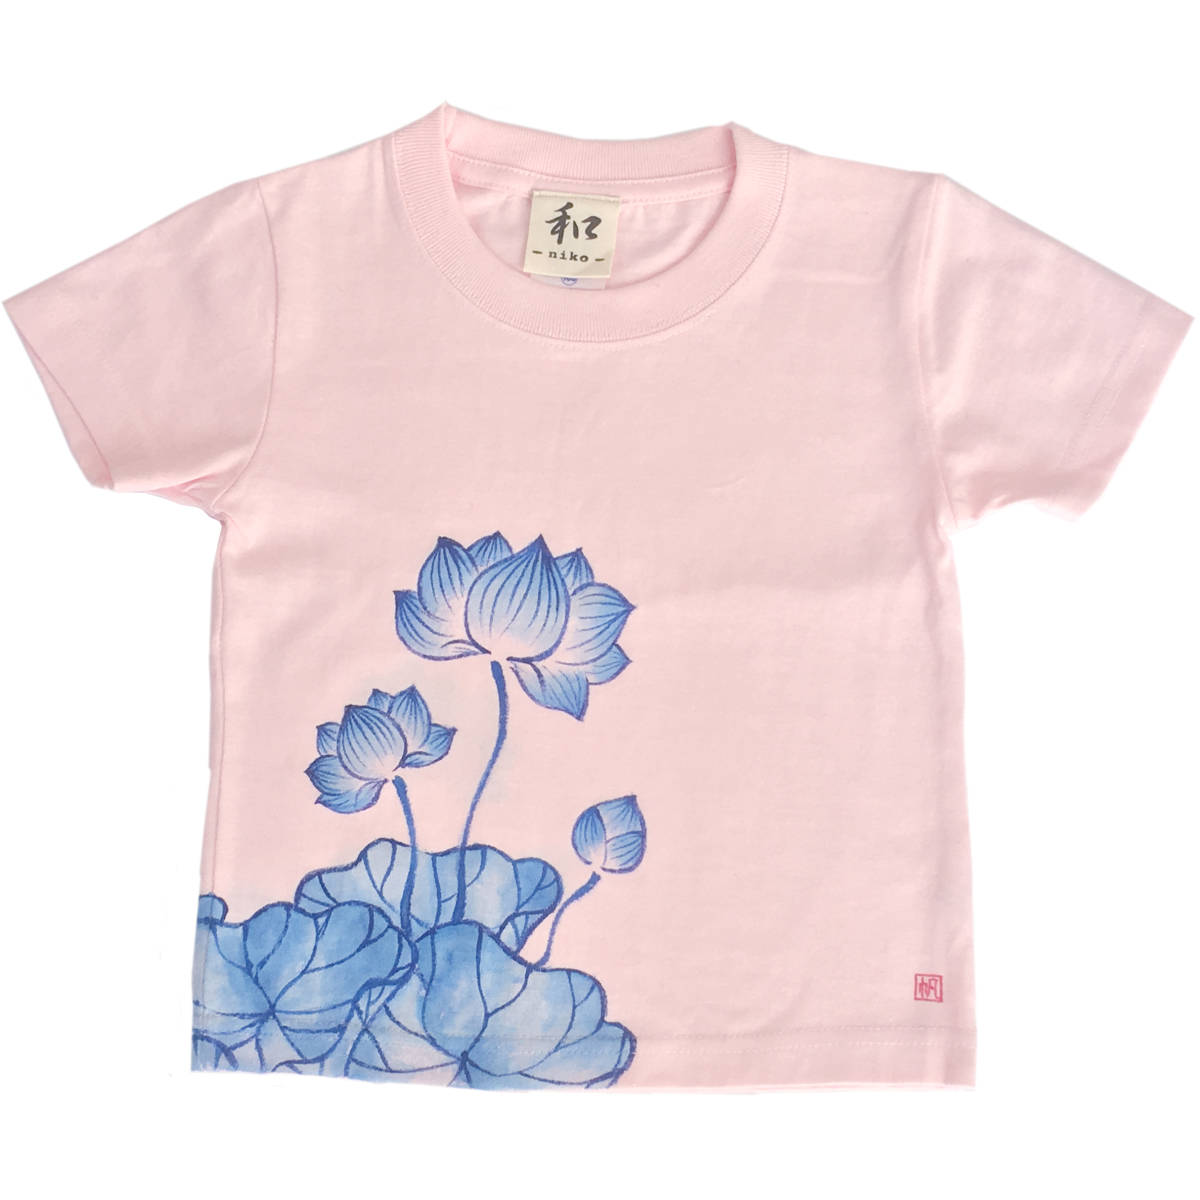 키즈 티셔츠, 사이즈 150, 핑크 로터스 패턴 티셔츠, 핸드페인팅 연꽃 패턴 티셔츠, 짧은 소매, 일본식 디자인, 일본식, 복고풍, 수공, 상의, 반소매 티셔츠, 150(145~154cm)